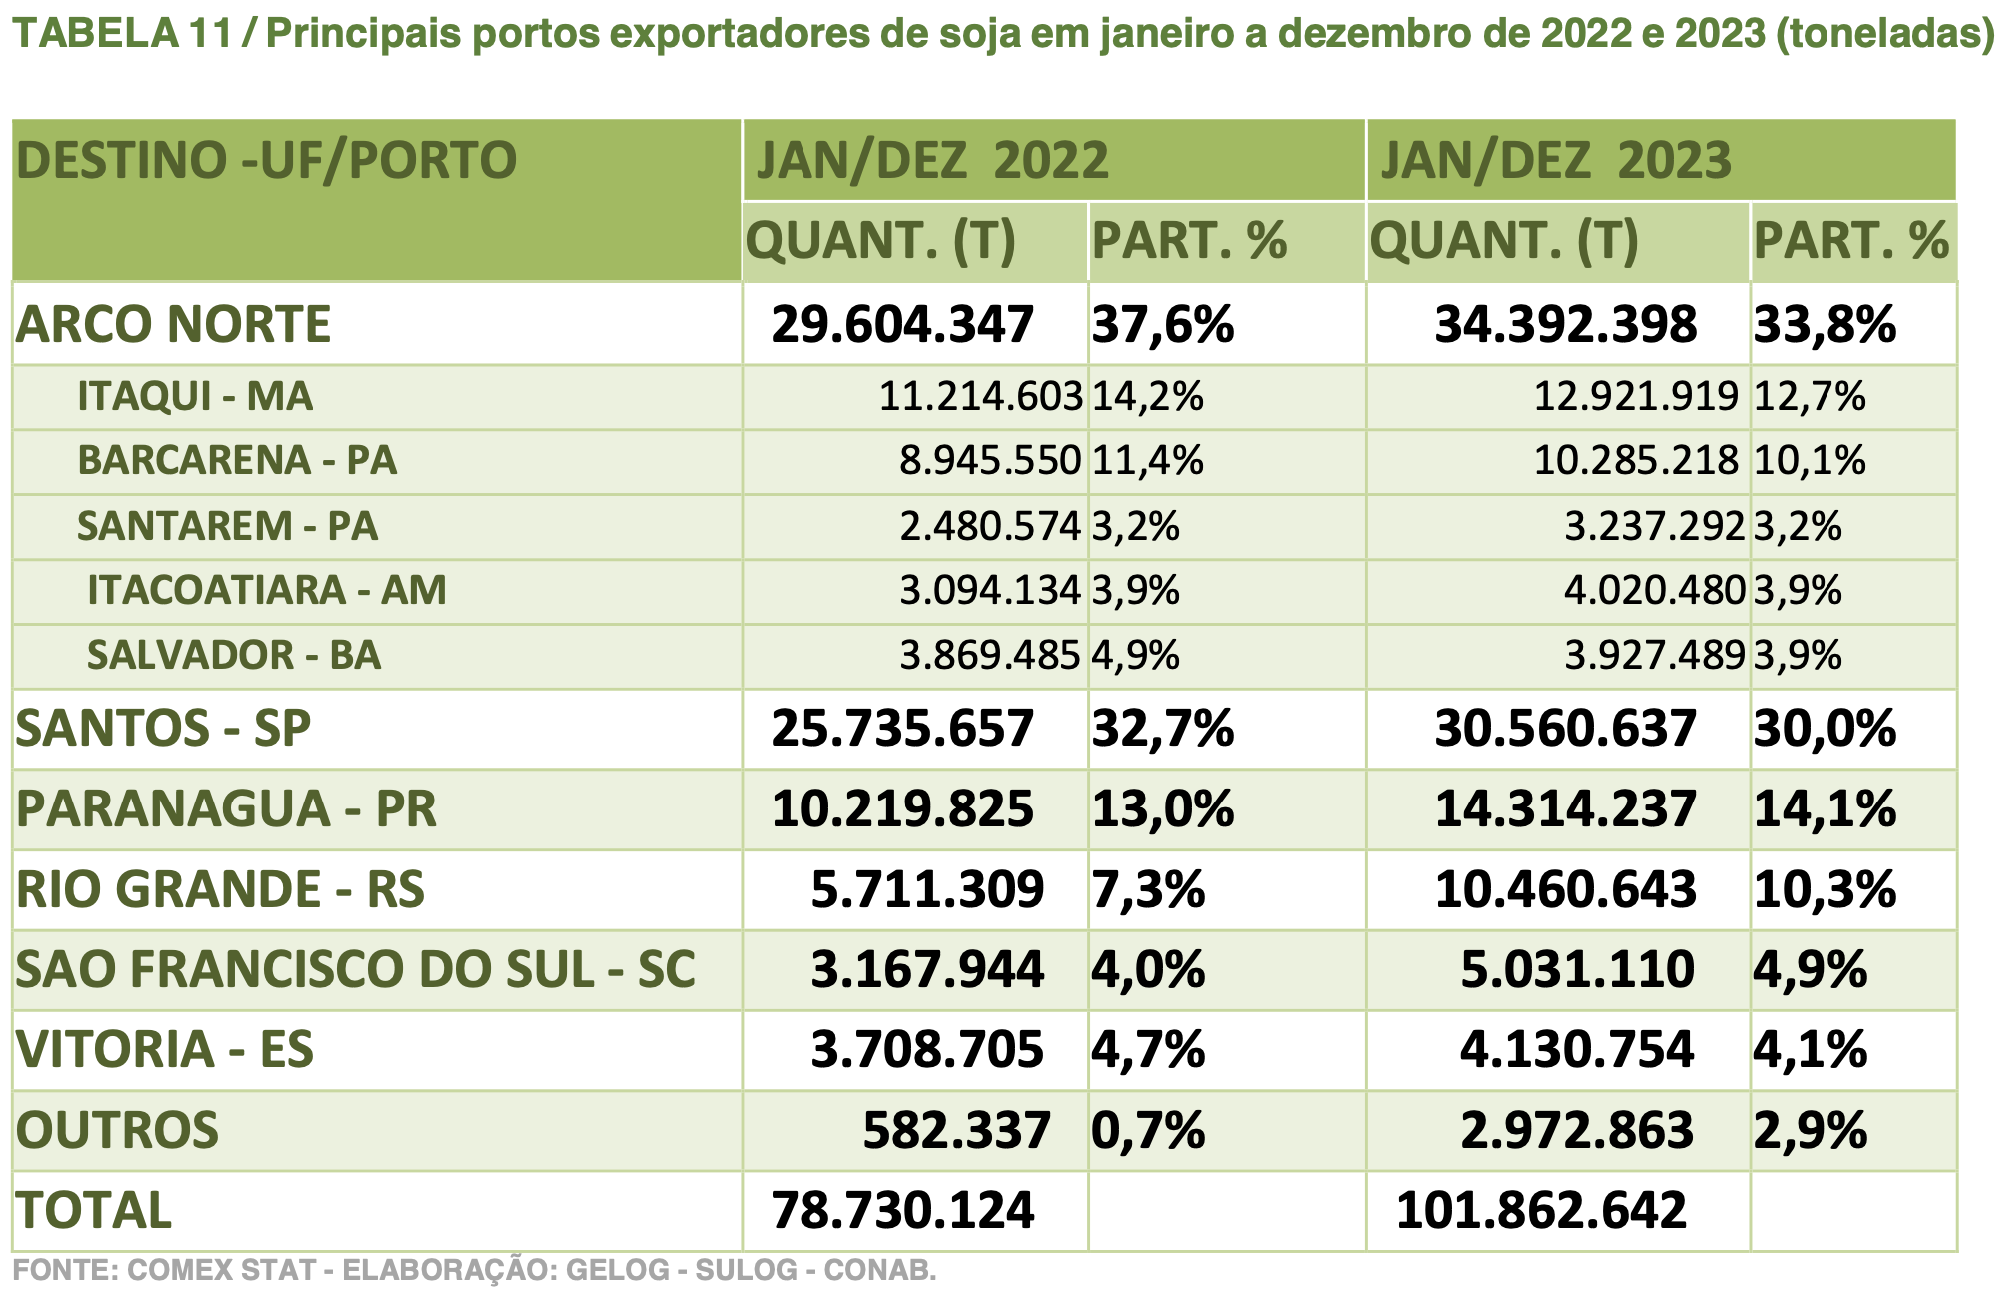 Principais portos brasieliros exportadores de soja em 2022 e 2023 (toneladas)